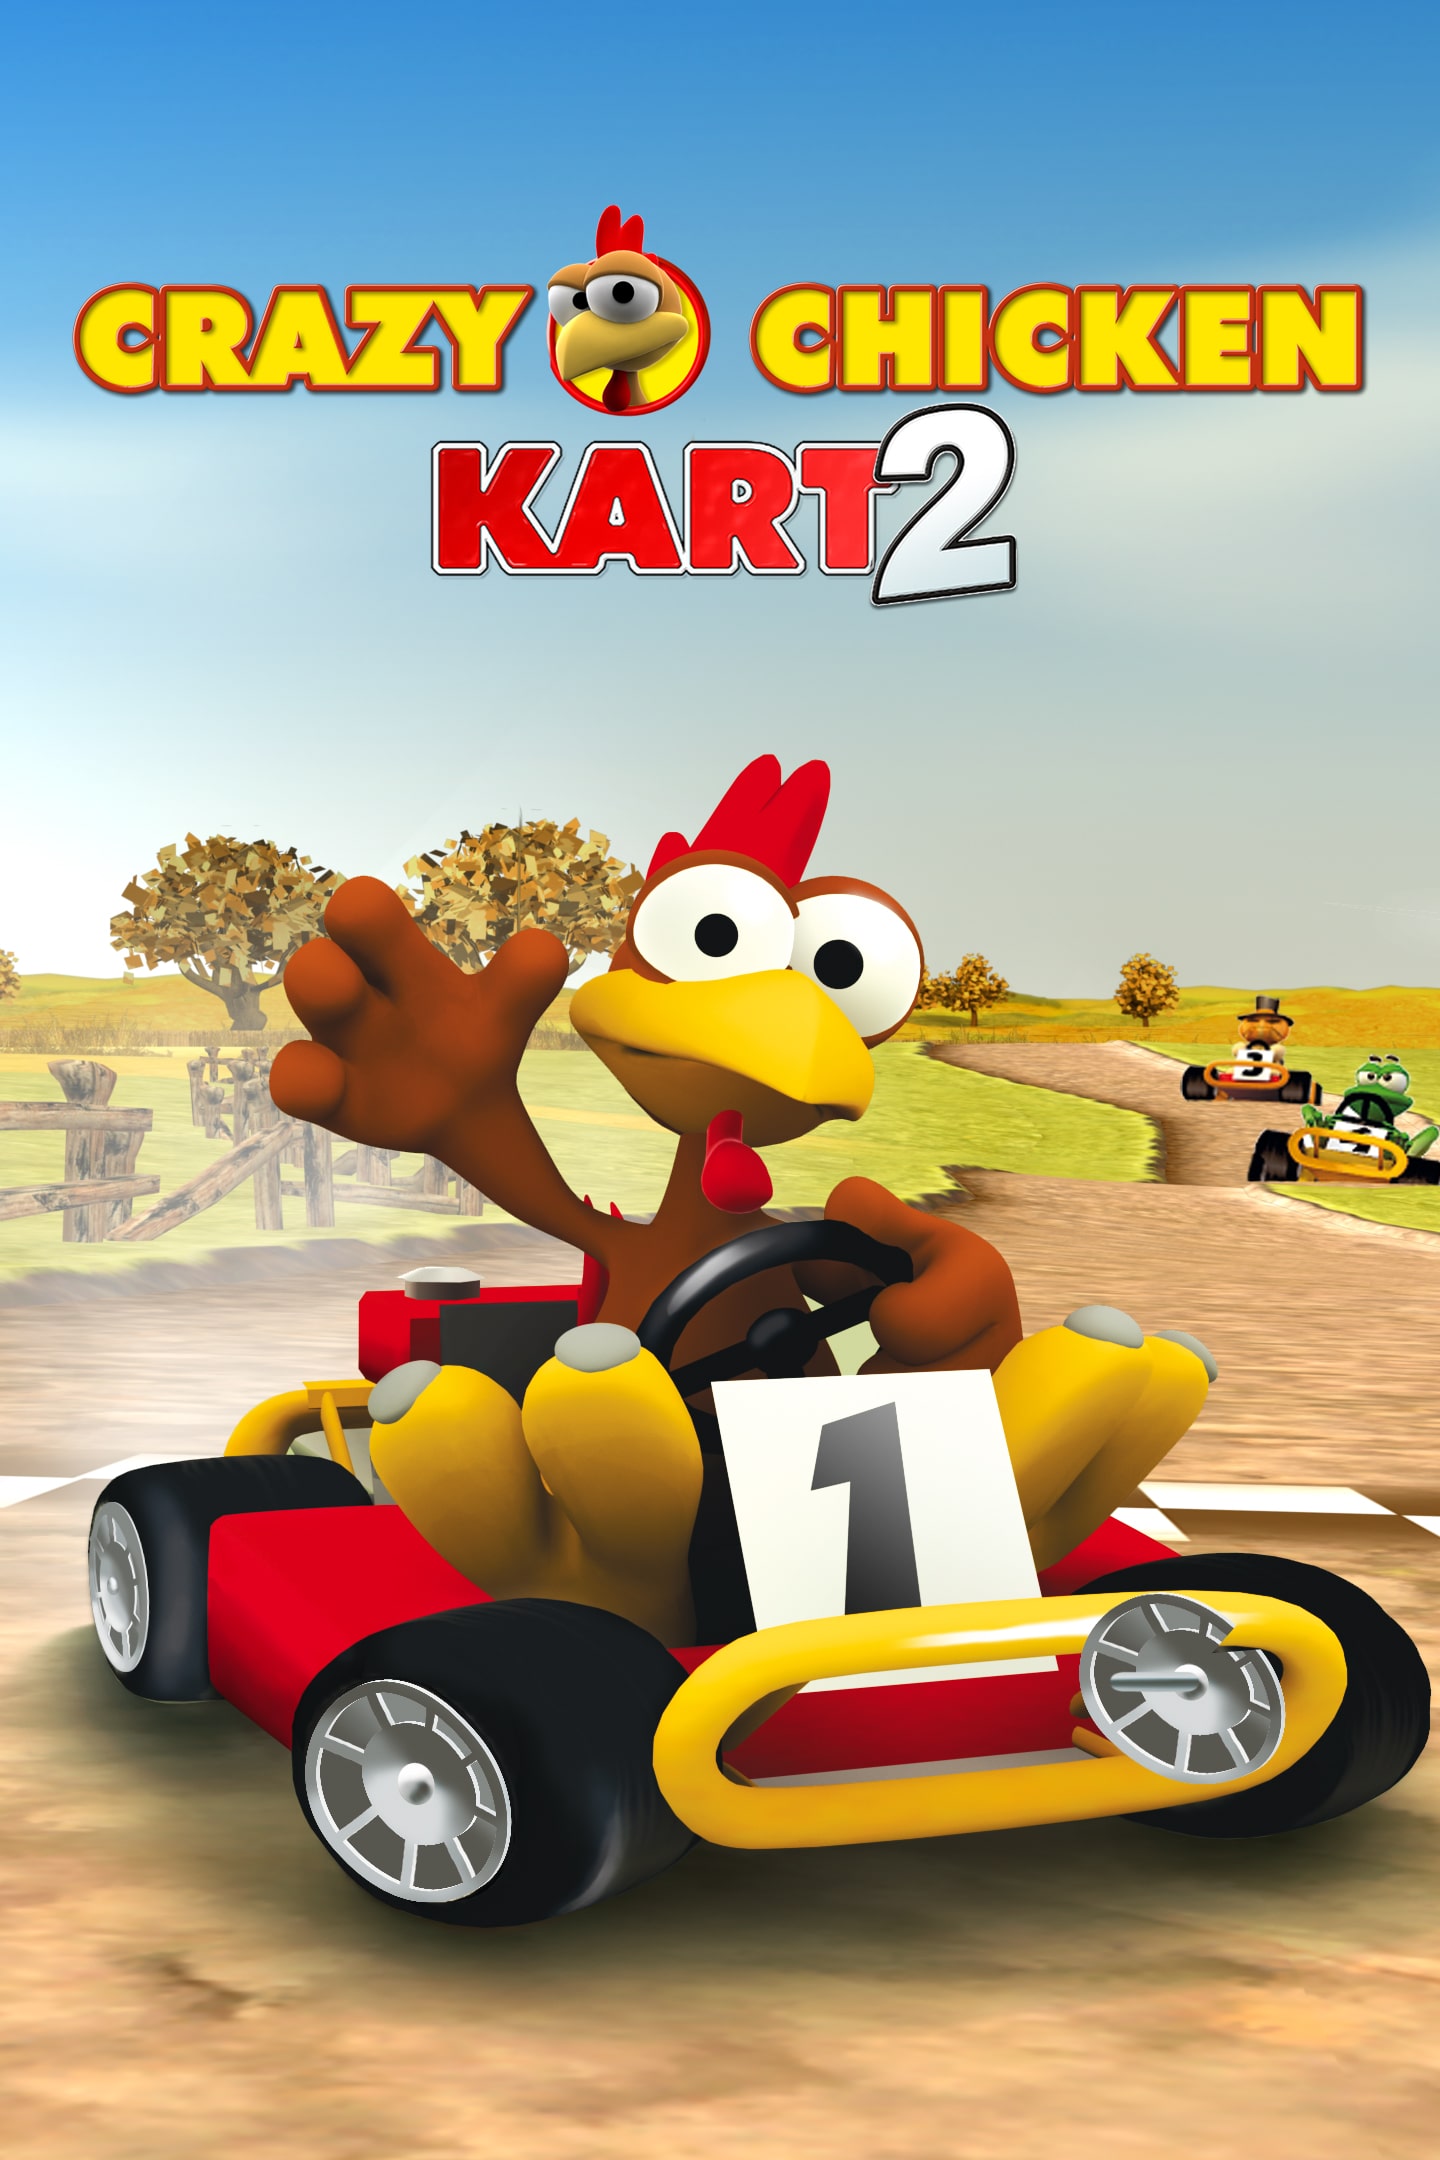 Crazy Kart 2 Chicken